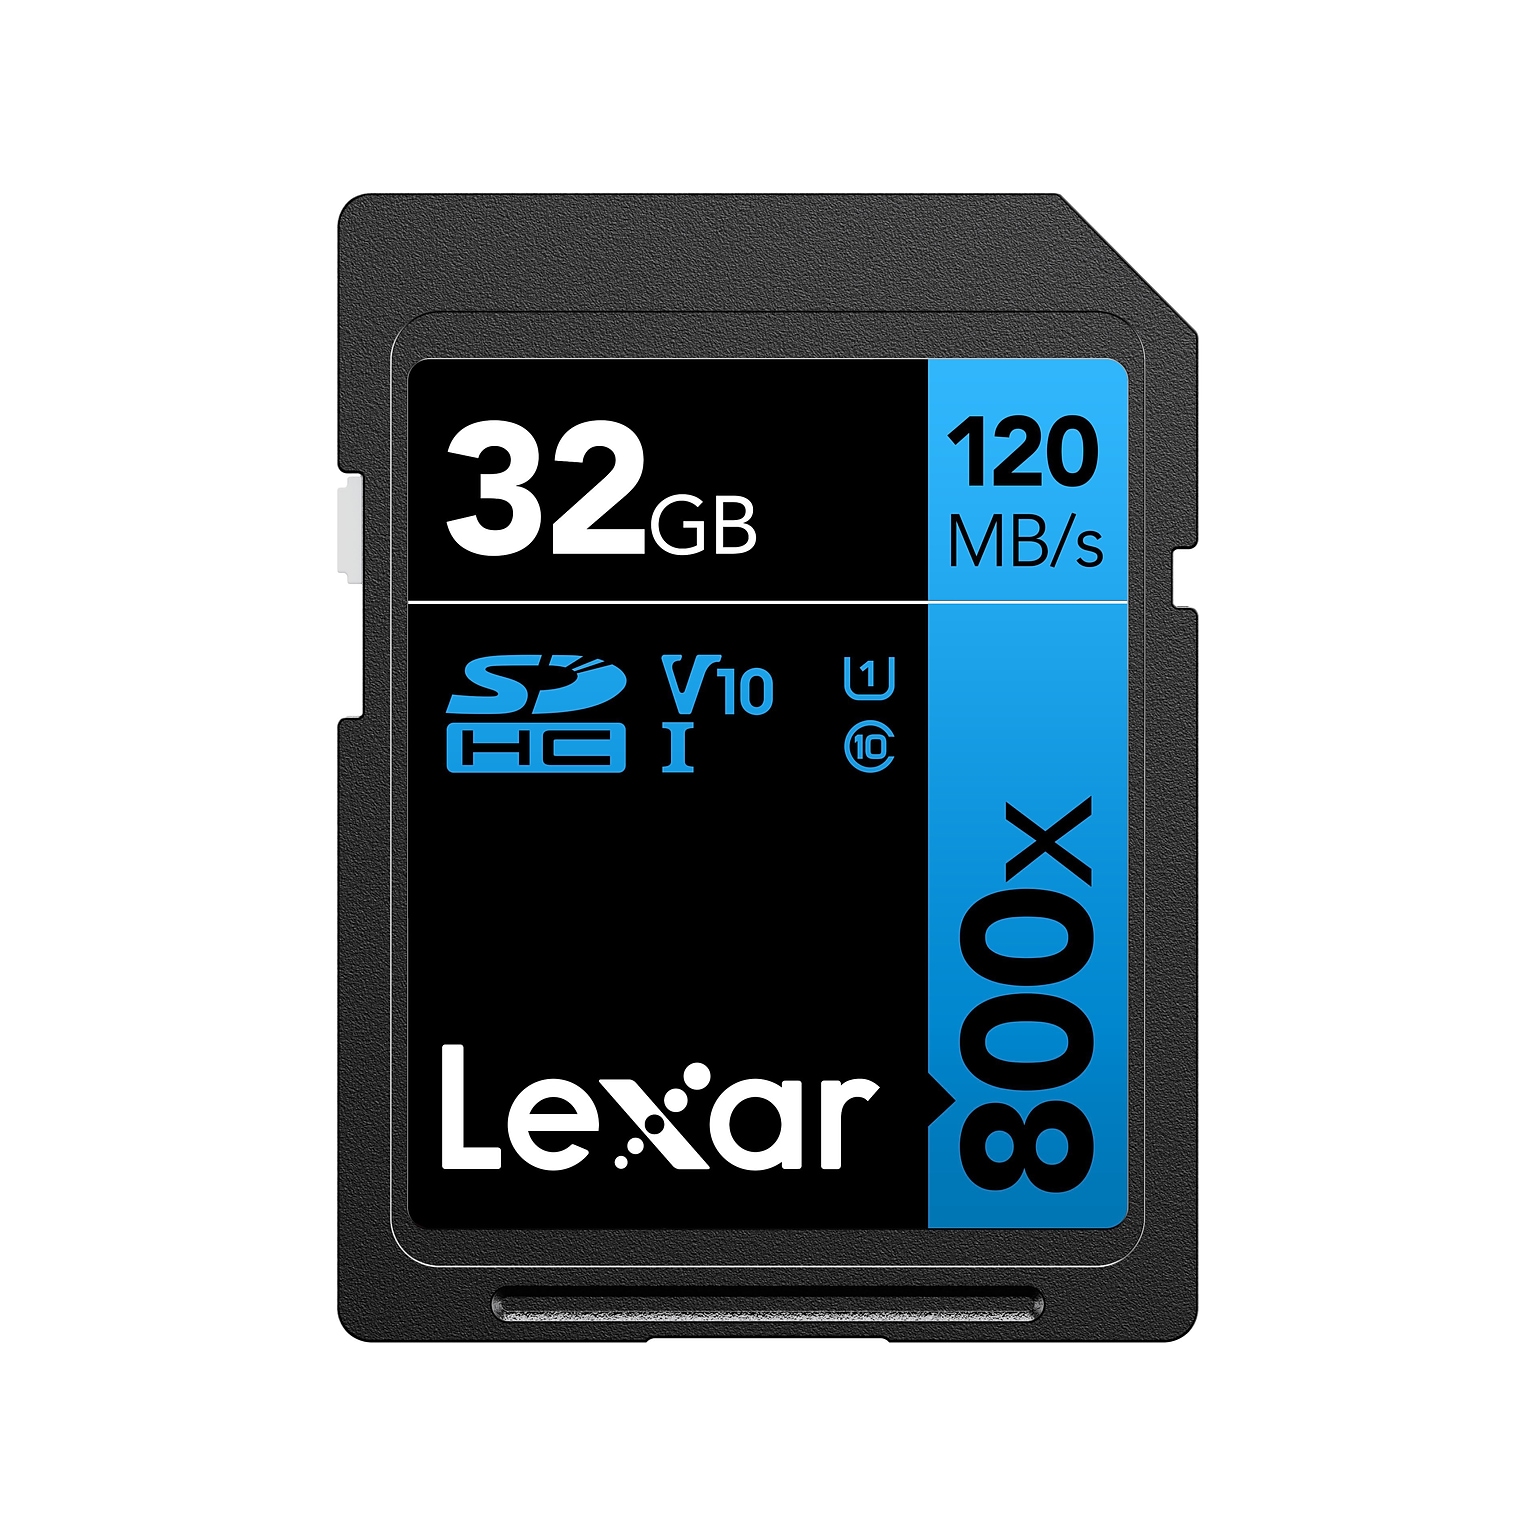 Lexar BLUE Series High-Performance 32GB SDHC Memory Card, Class 10, UHS-I, V10 (LSD80-32G-BNNNU)